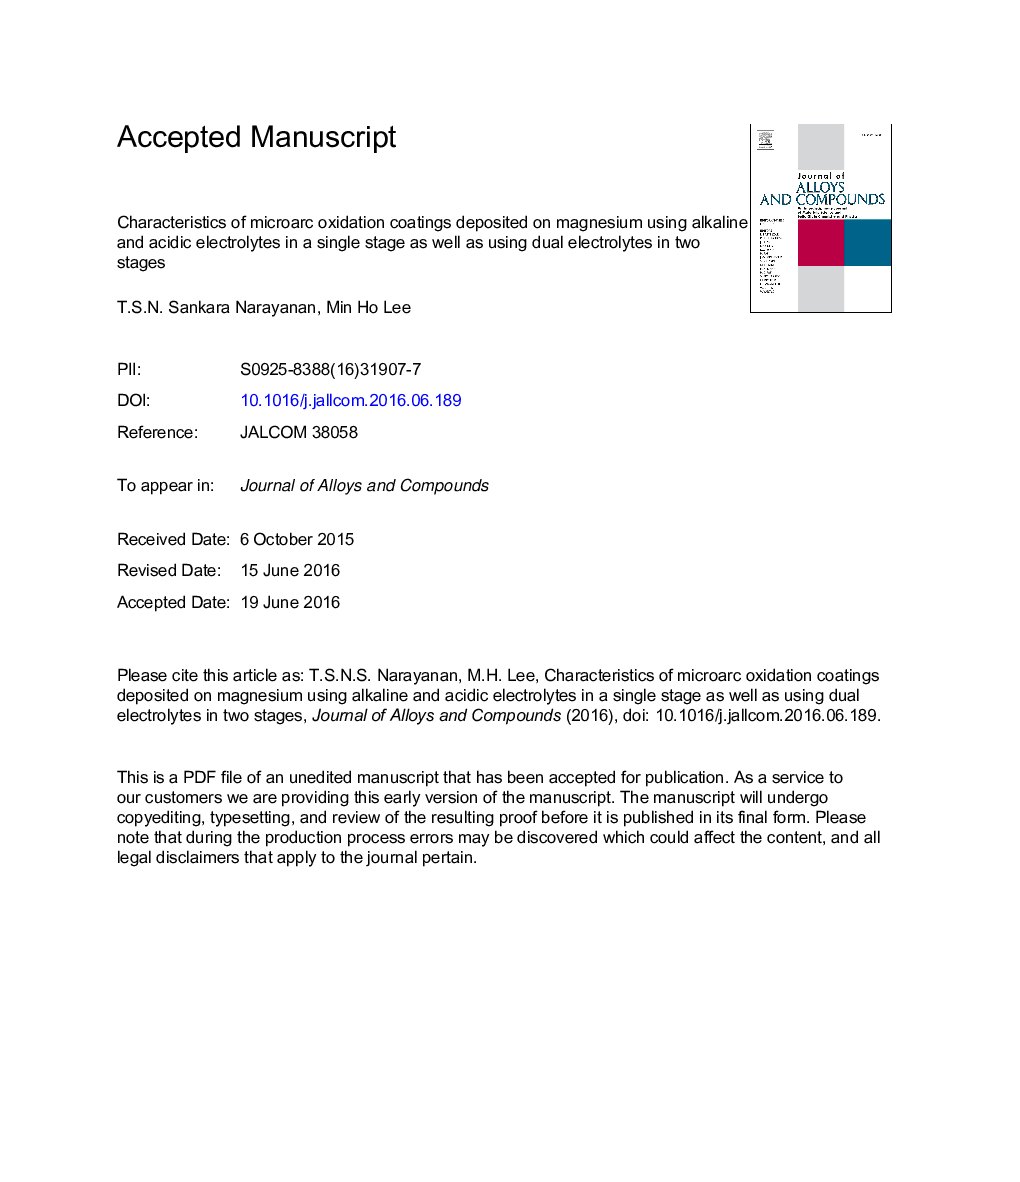 خصوصیات پوشش های اکسیداسیون میکروارک ها در منیزیم با استفاده از الکترولیت های قلیایی و اسیدی در یک مرحله و همچنین استفاده از الکترولیت های دوگانه در دو مرحله 